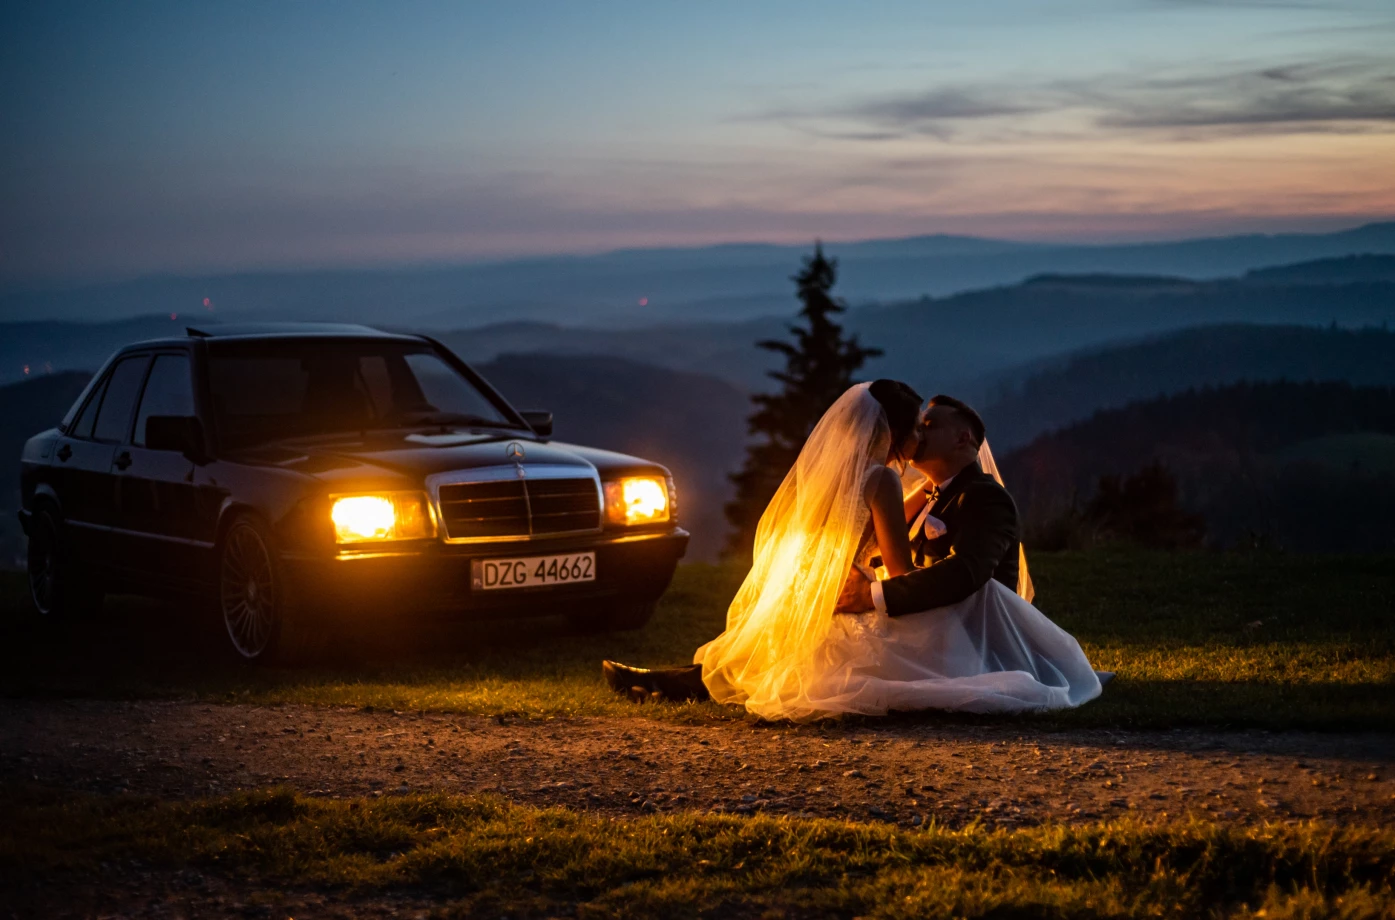 zdjęcia wroclaw fotograf piotr-zanin portfolio zdjecia slubne inspiracje wesele plener slubny sesja slubna